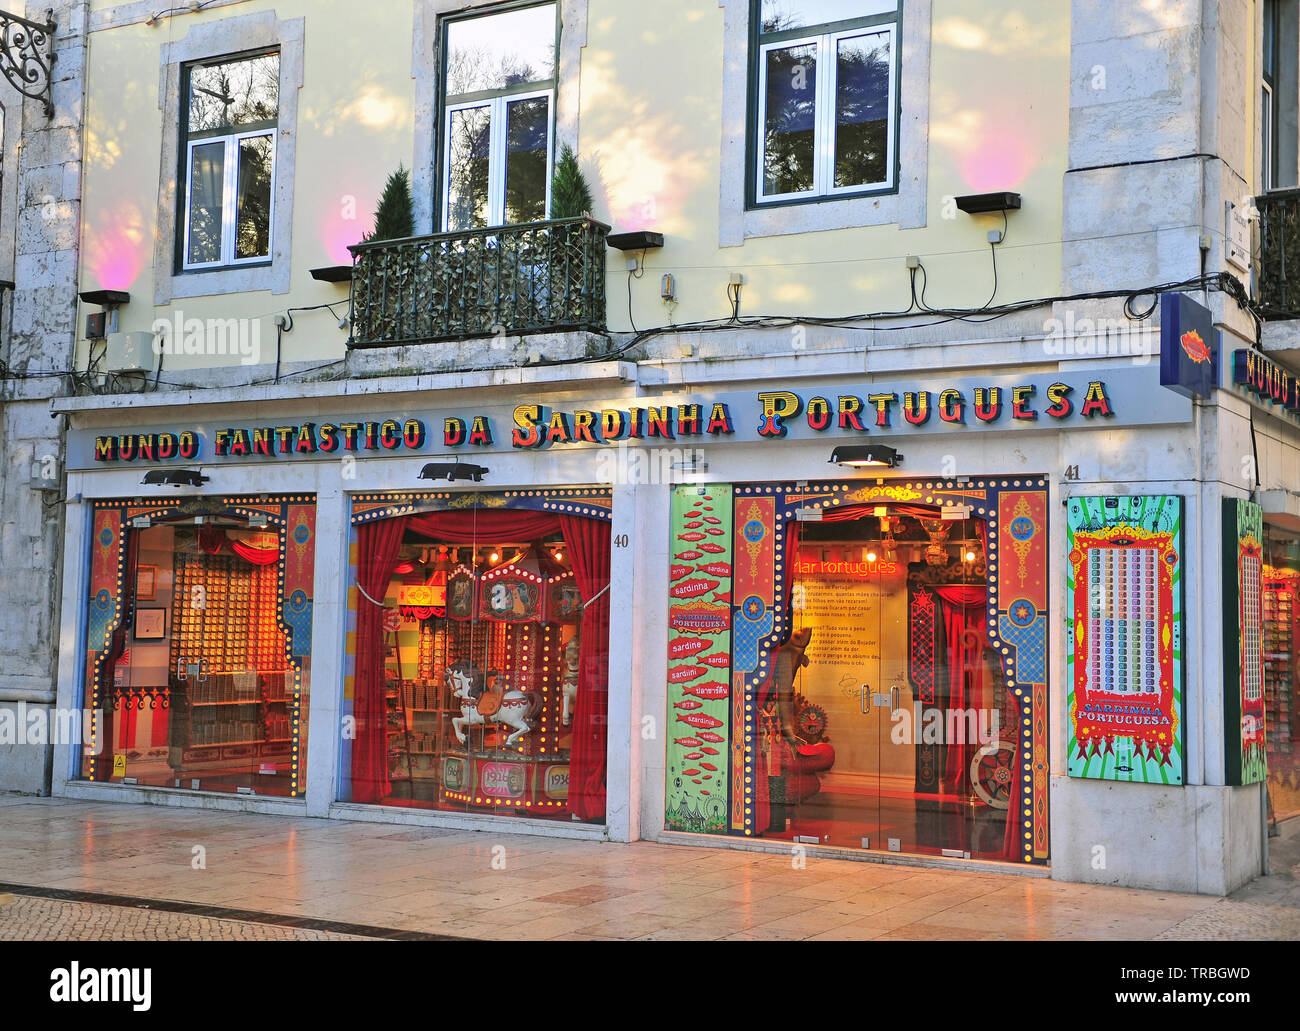 Lisbonne, Portugal - 14 février : Façade de monde fantastique de sardine portugaise store le 14 février 2019. Banque D'Images